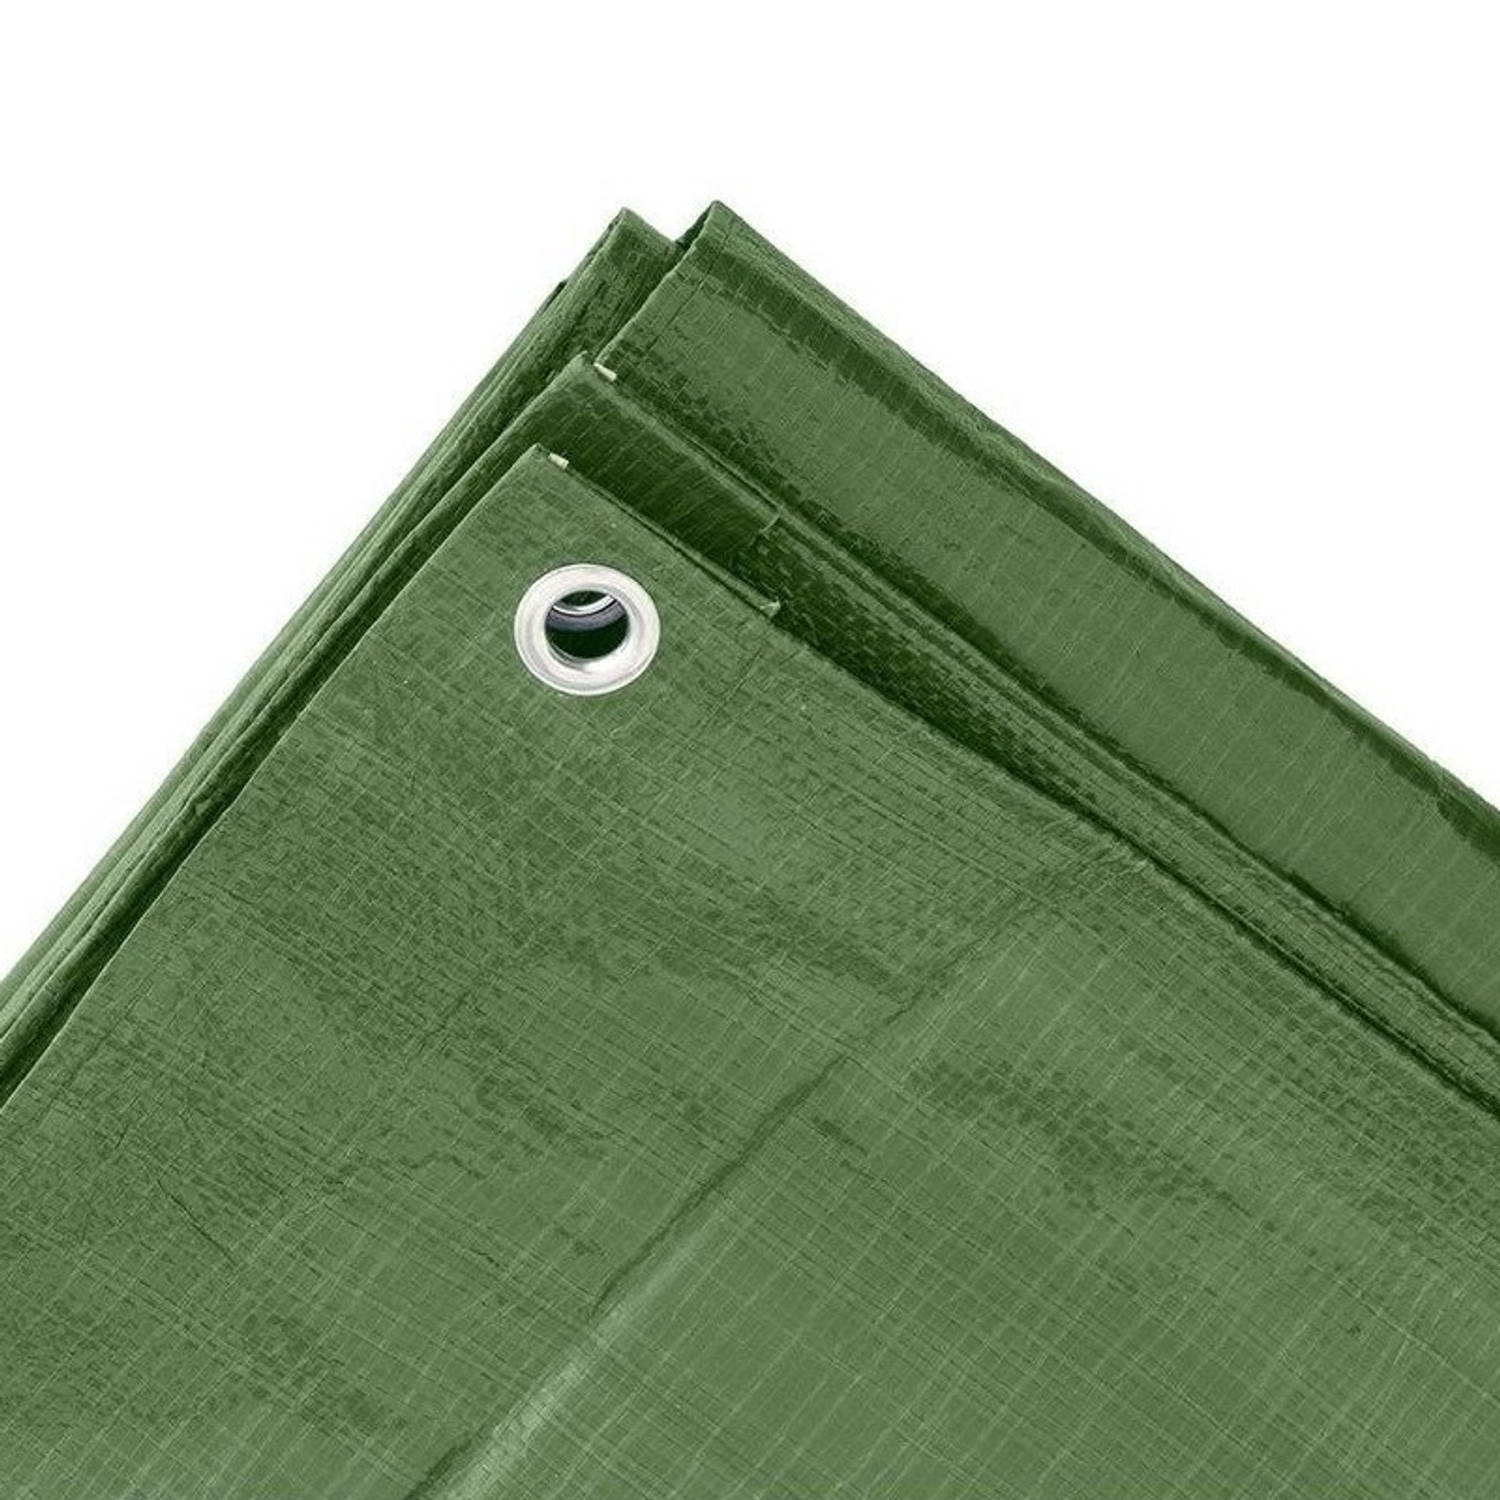 Groen afdekzeil / dekkleed 8 x 10 m - Afdekzeilen